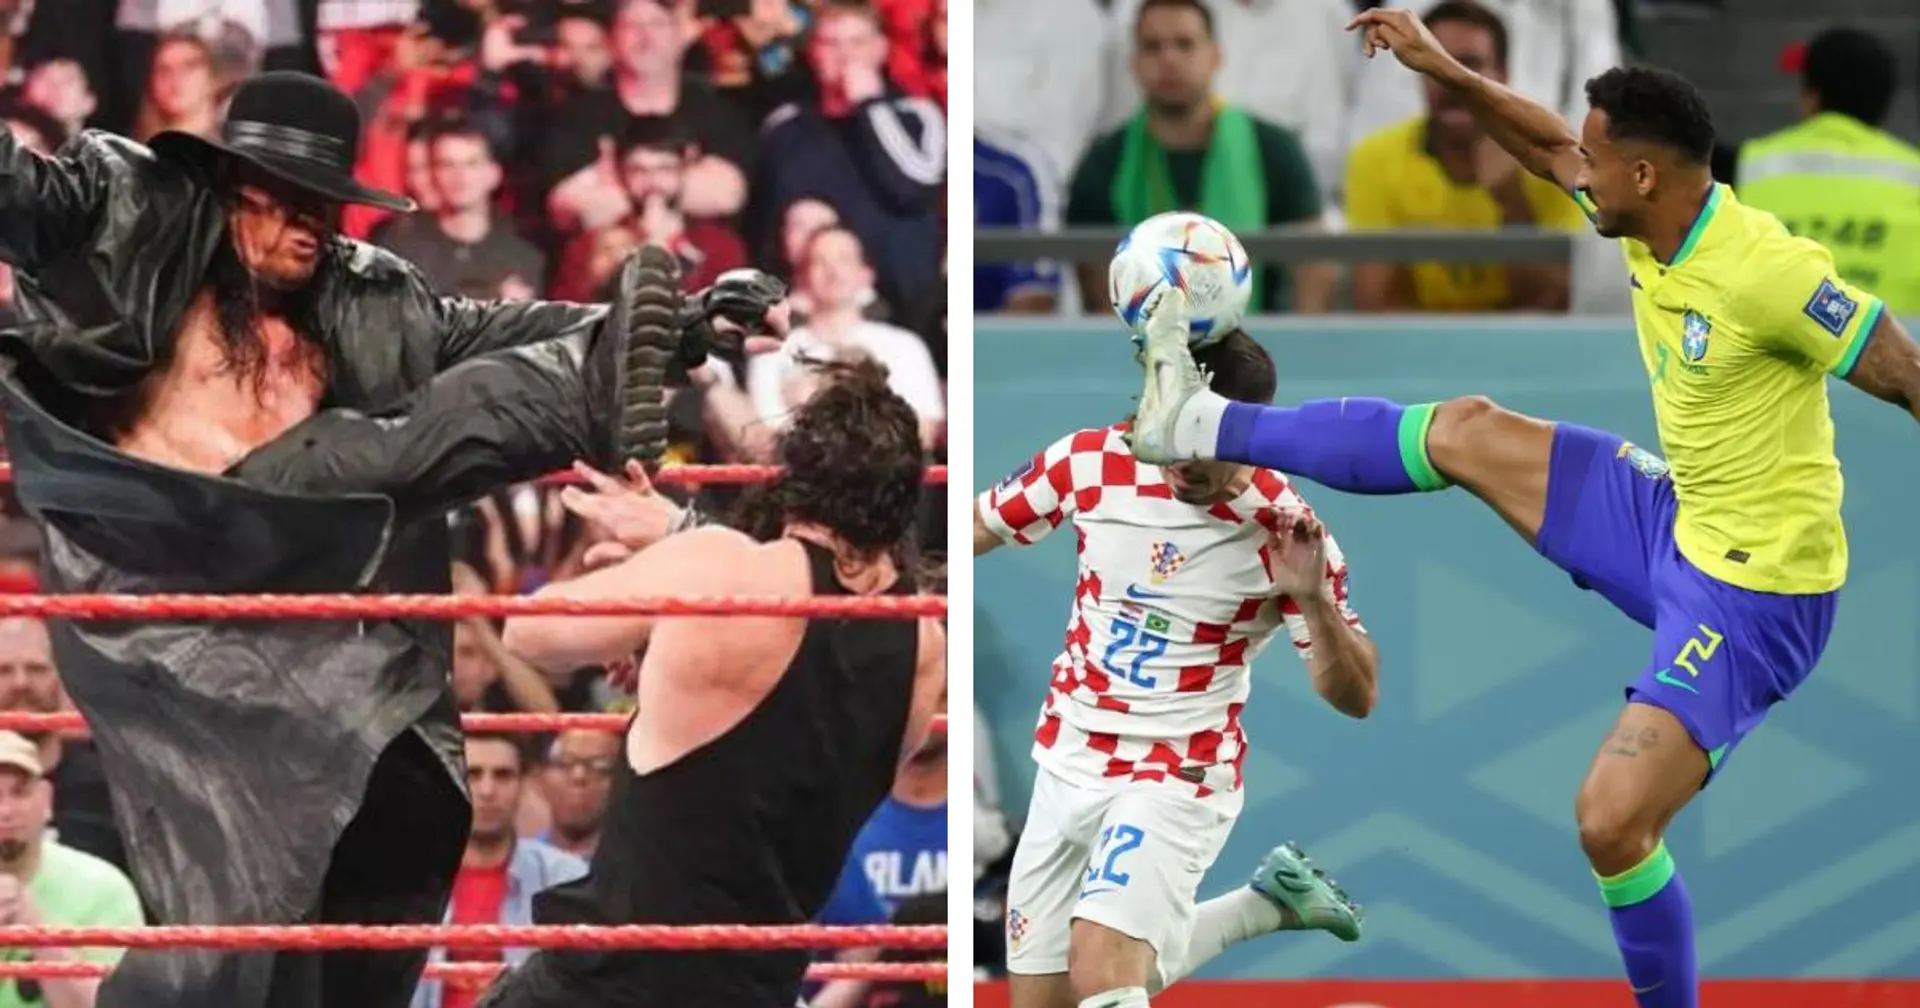 "Danilo versione WWE": l'intervento del difensore della Juve a Qatar 2022 scatena l'ironia dei tifosi